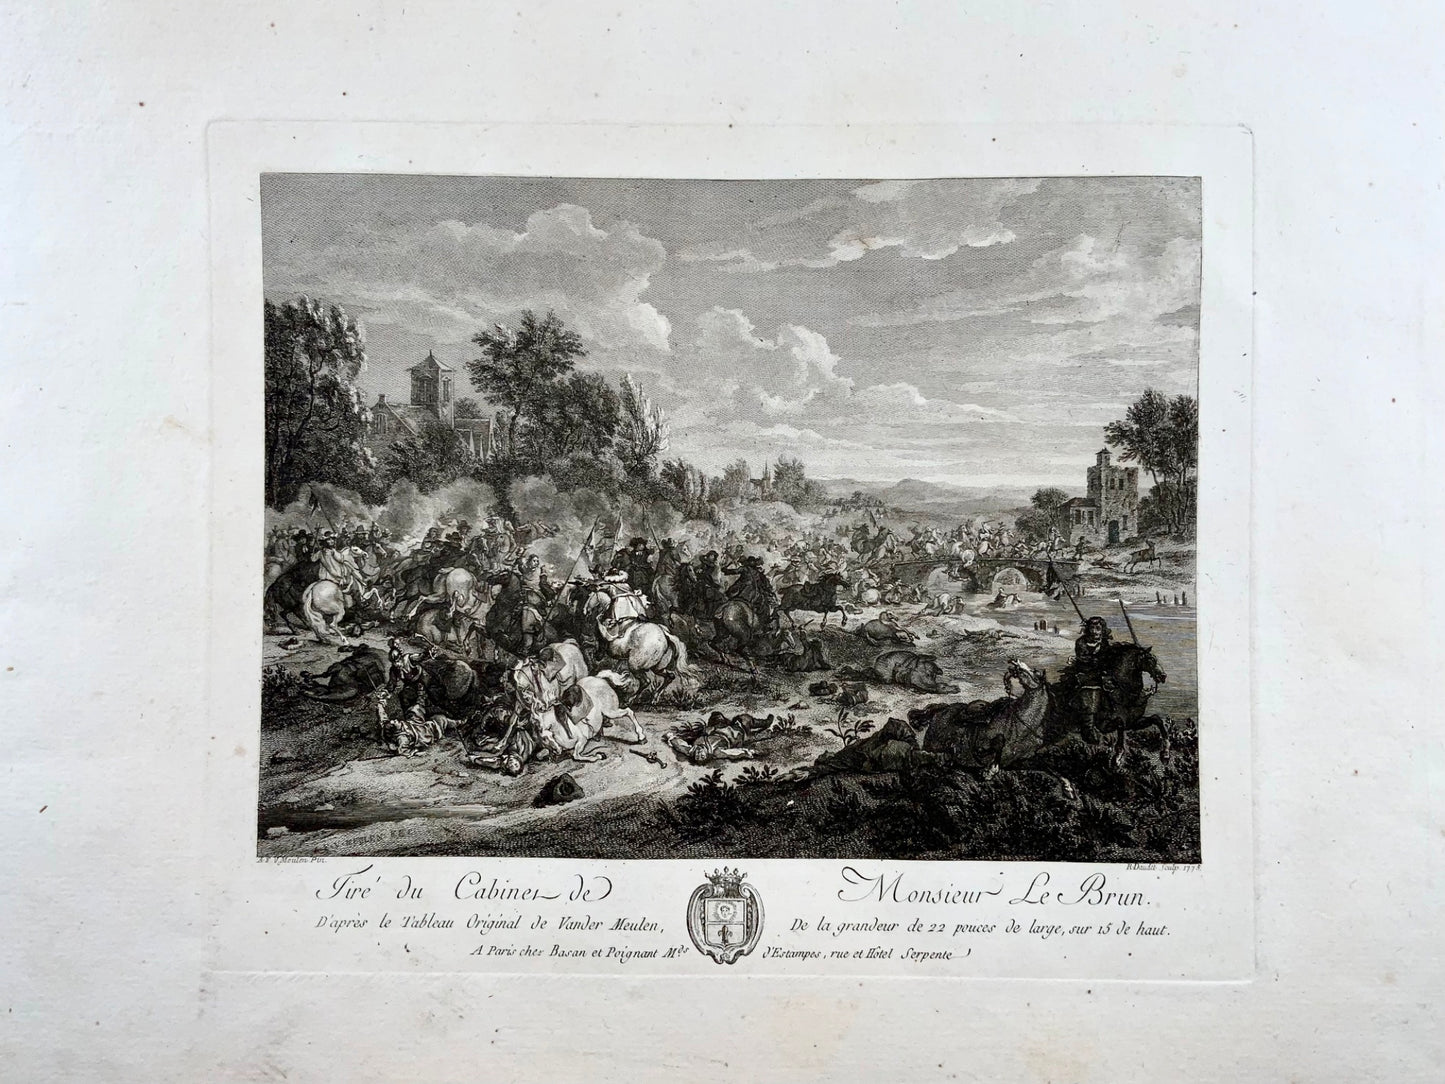 1775 Battaglia, attacco della cavalleria francese, van der Meulen del, incisione magistrale